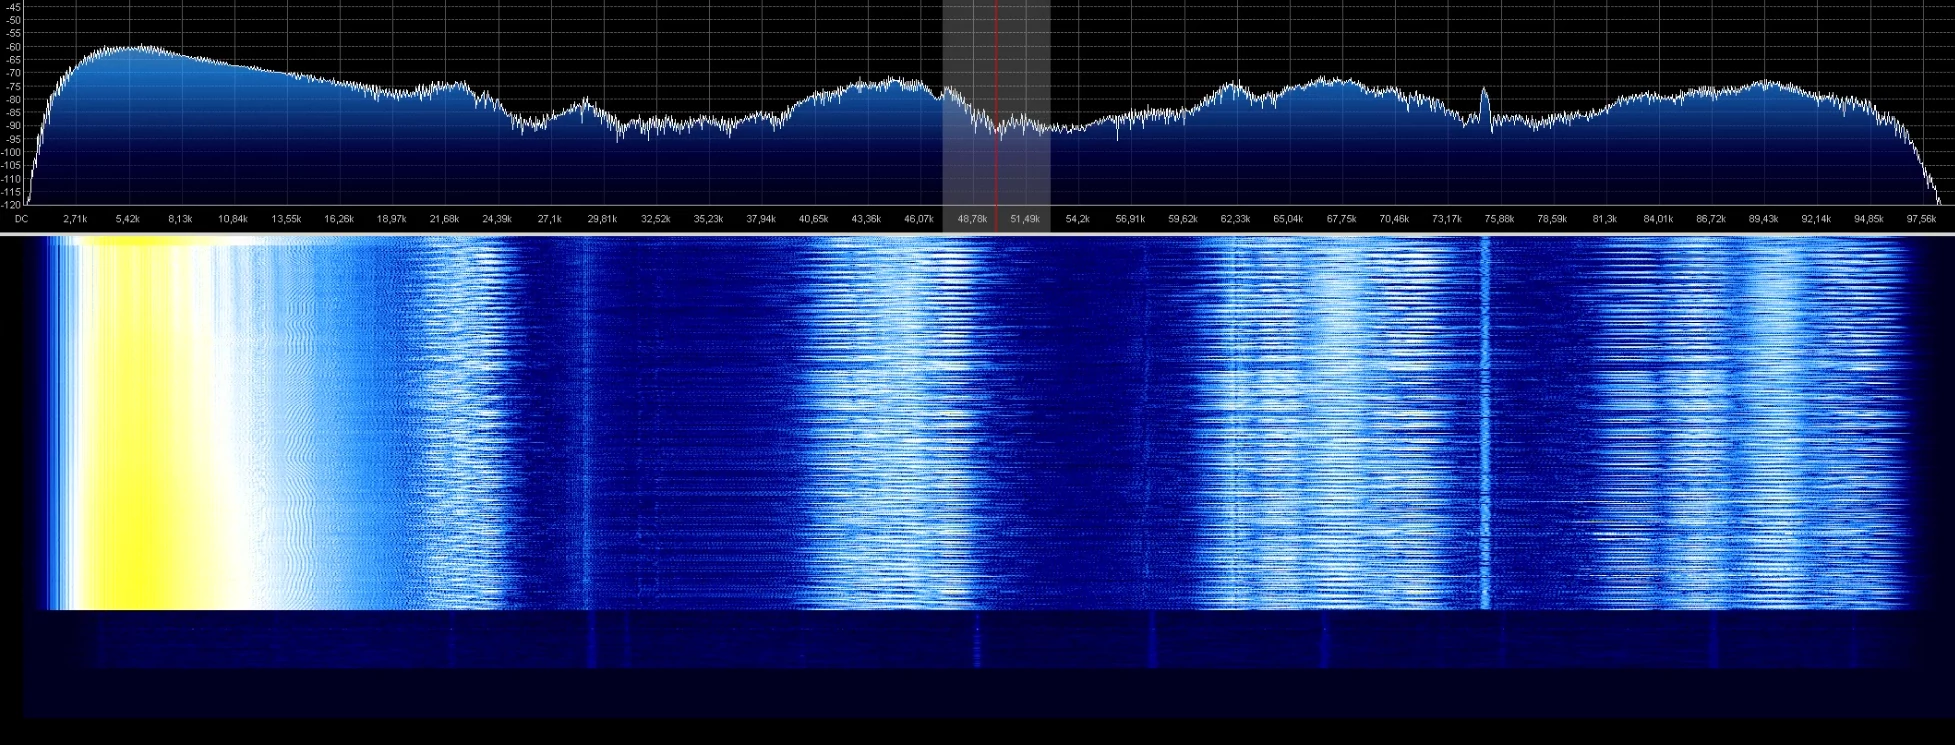 radio spectrum under attack